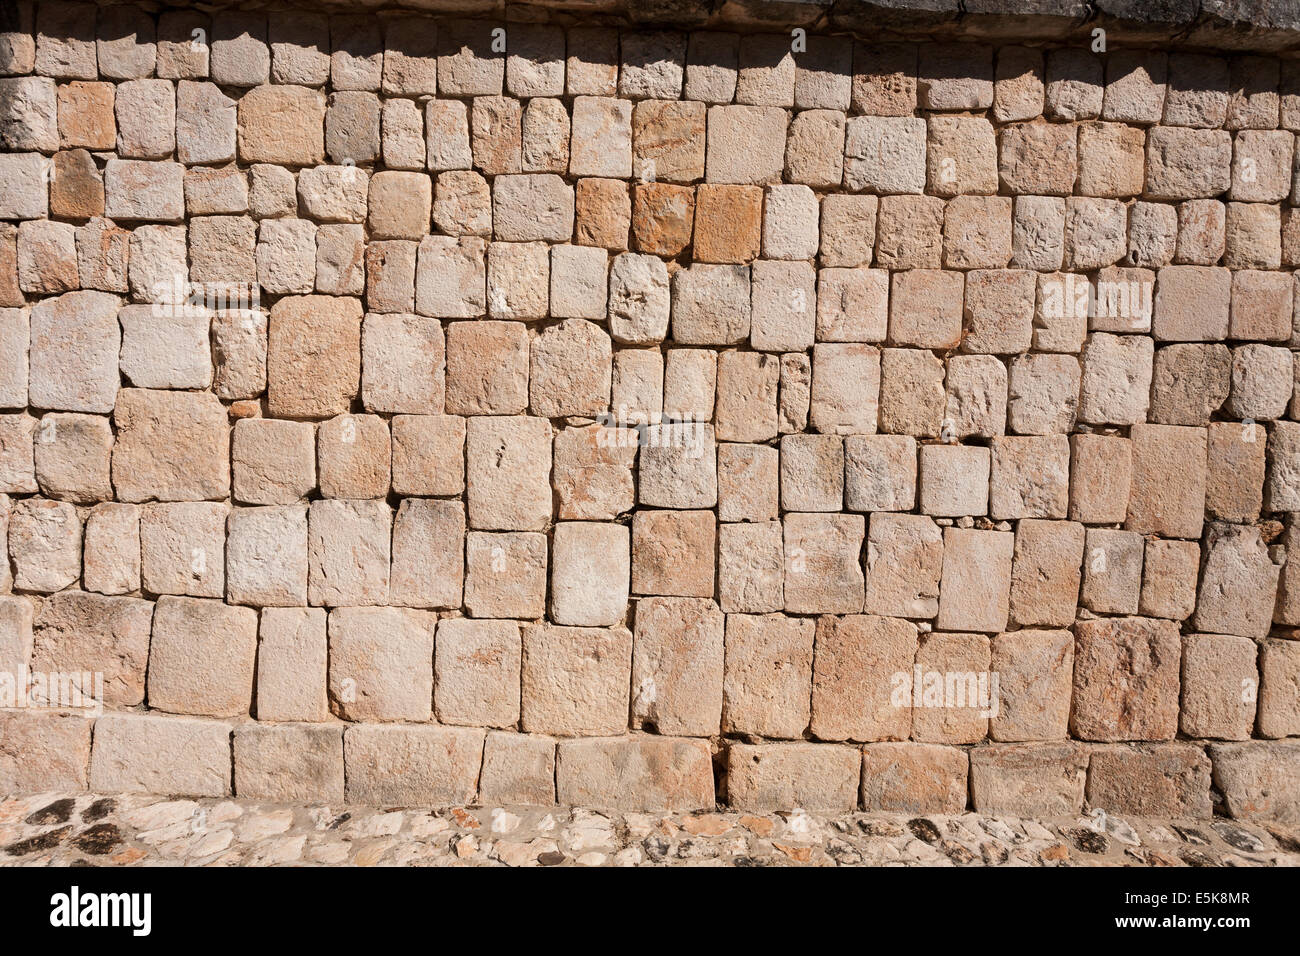 Mur de pierres sèches à Uxmal. Blocs de pierres soigneusement taillées dans un mur de roulement de poids. Uxmal, Yucatan, Mexique Banque D'Images